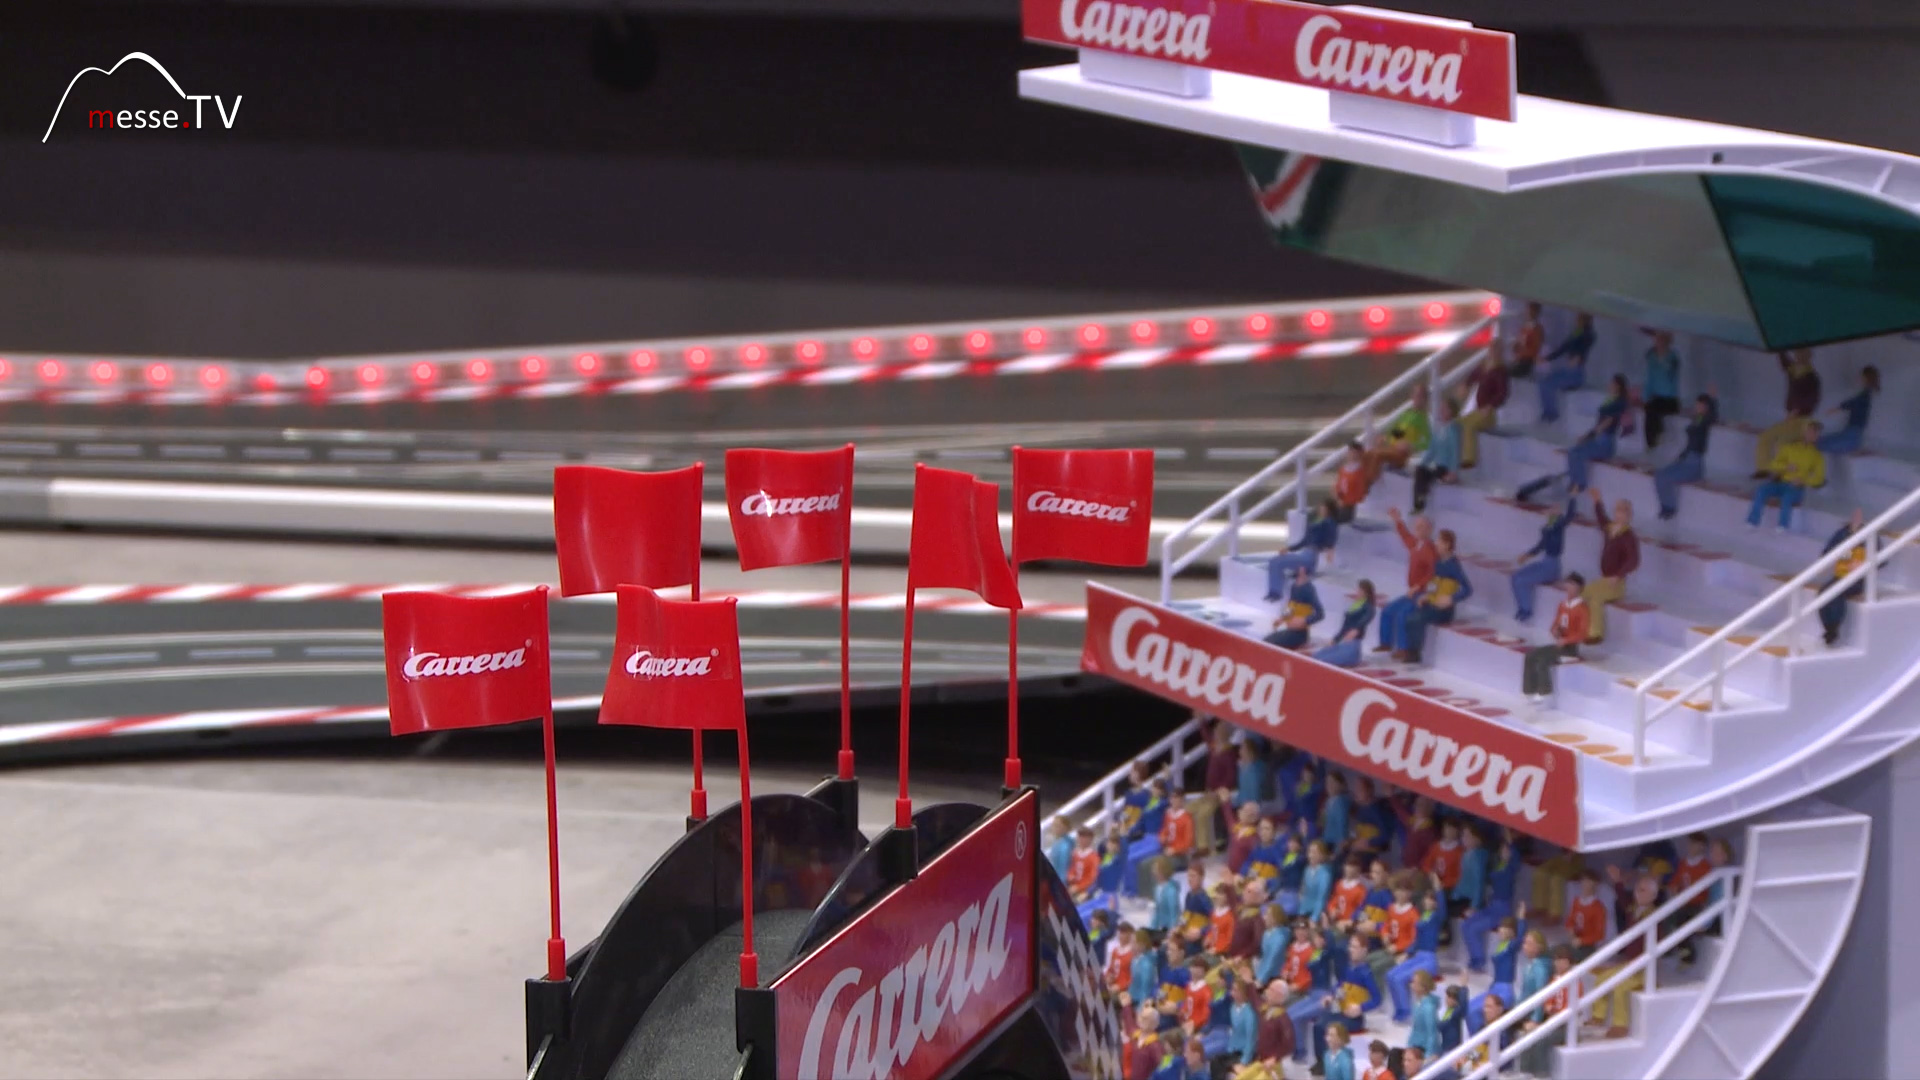 Carrera racetrack spectator grandPrix Spielwarenmesse 2018